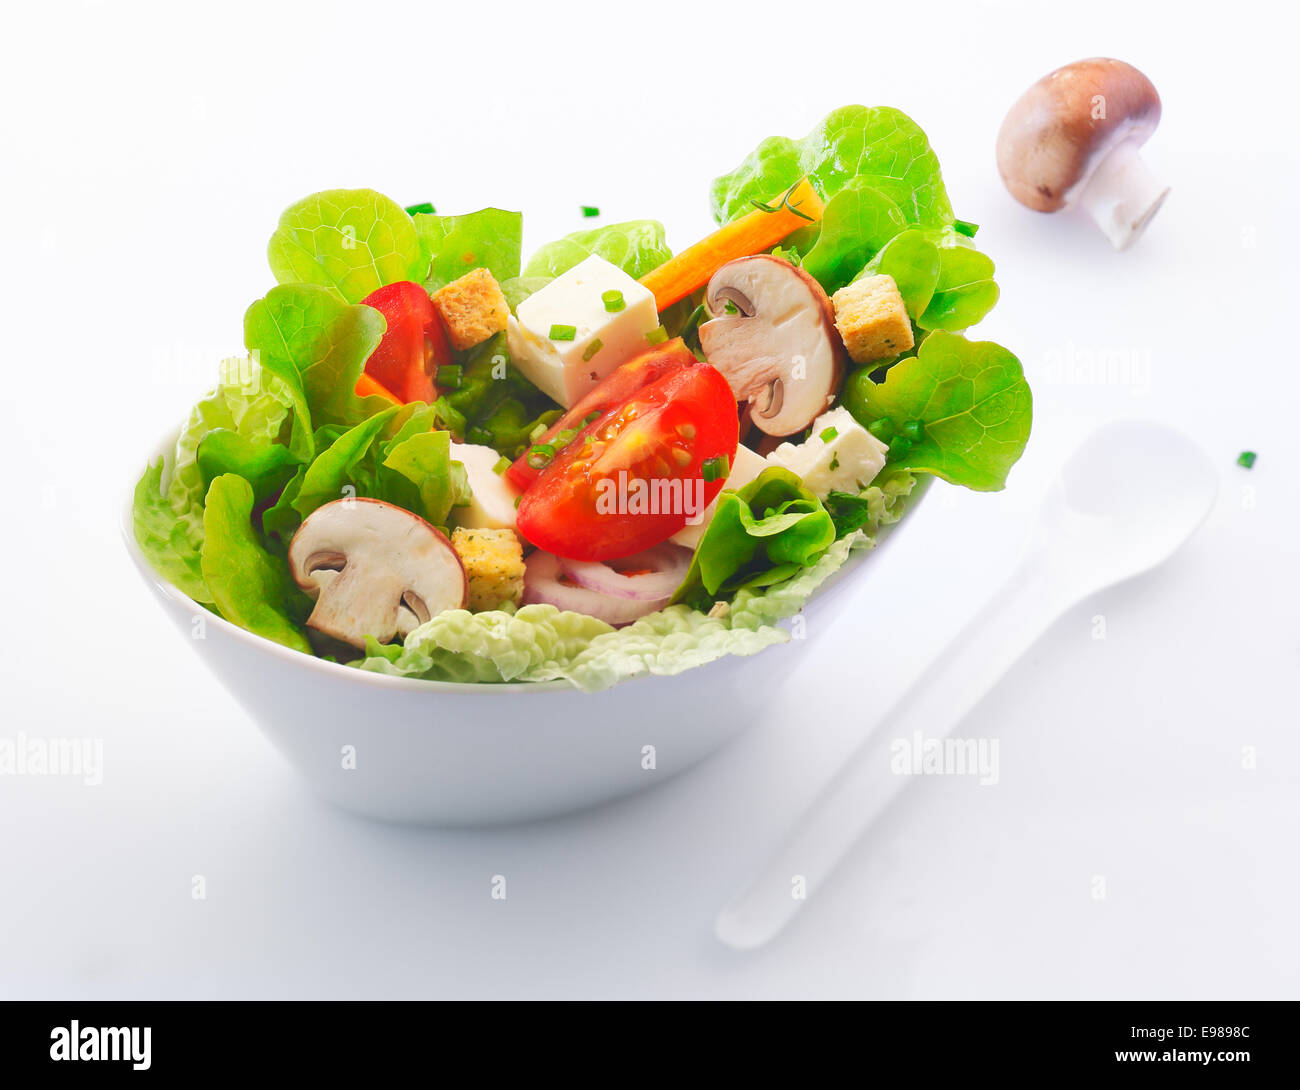 Côté individuels servant dans un plat de Chine blanc salade verte fraîche avec des tranches de champignons frais , la tomate et le fromage feta Banque D'Images